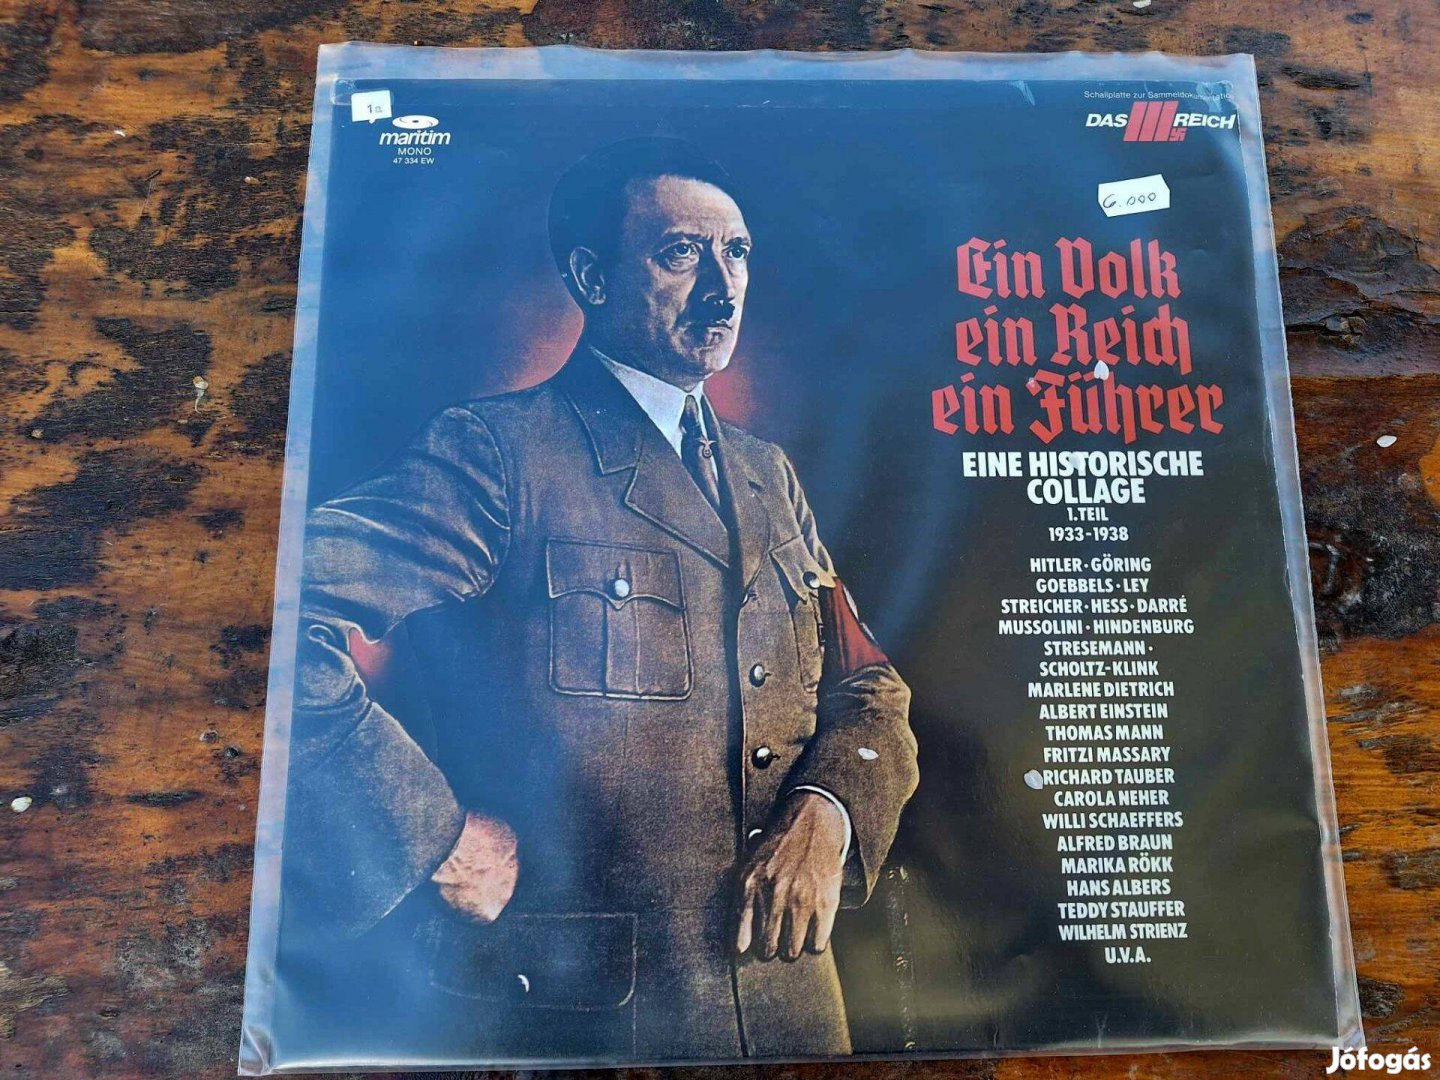 Ein Reich, ein Volk, ein Führer - hanglemezek, harmadik birodalom